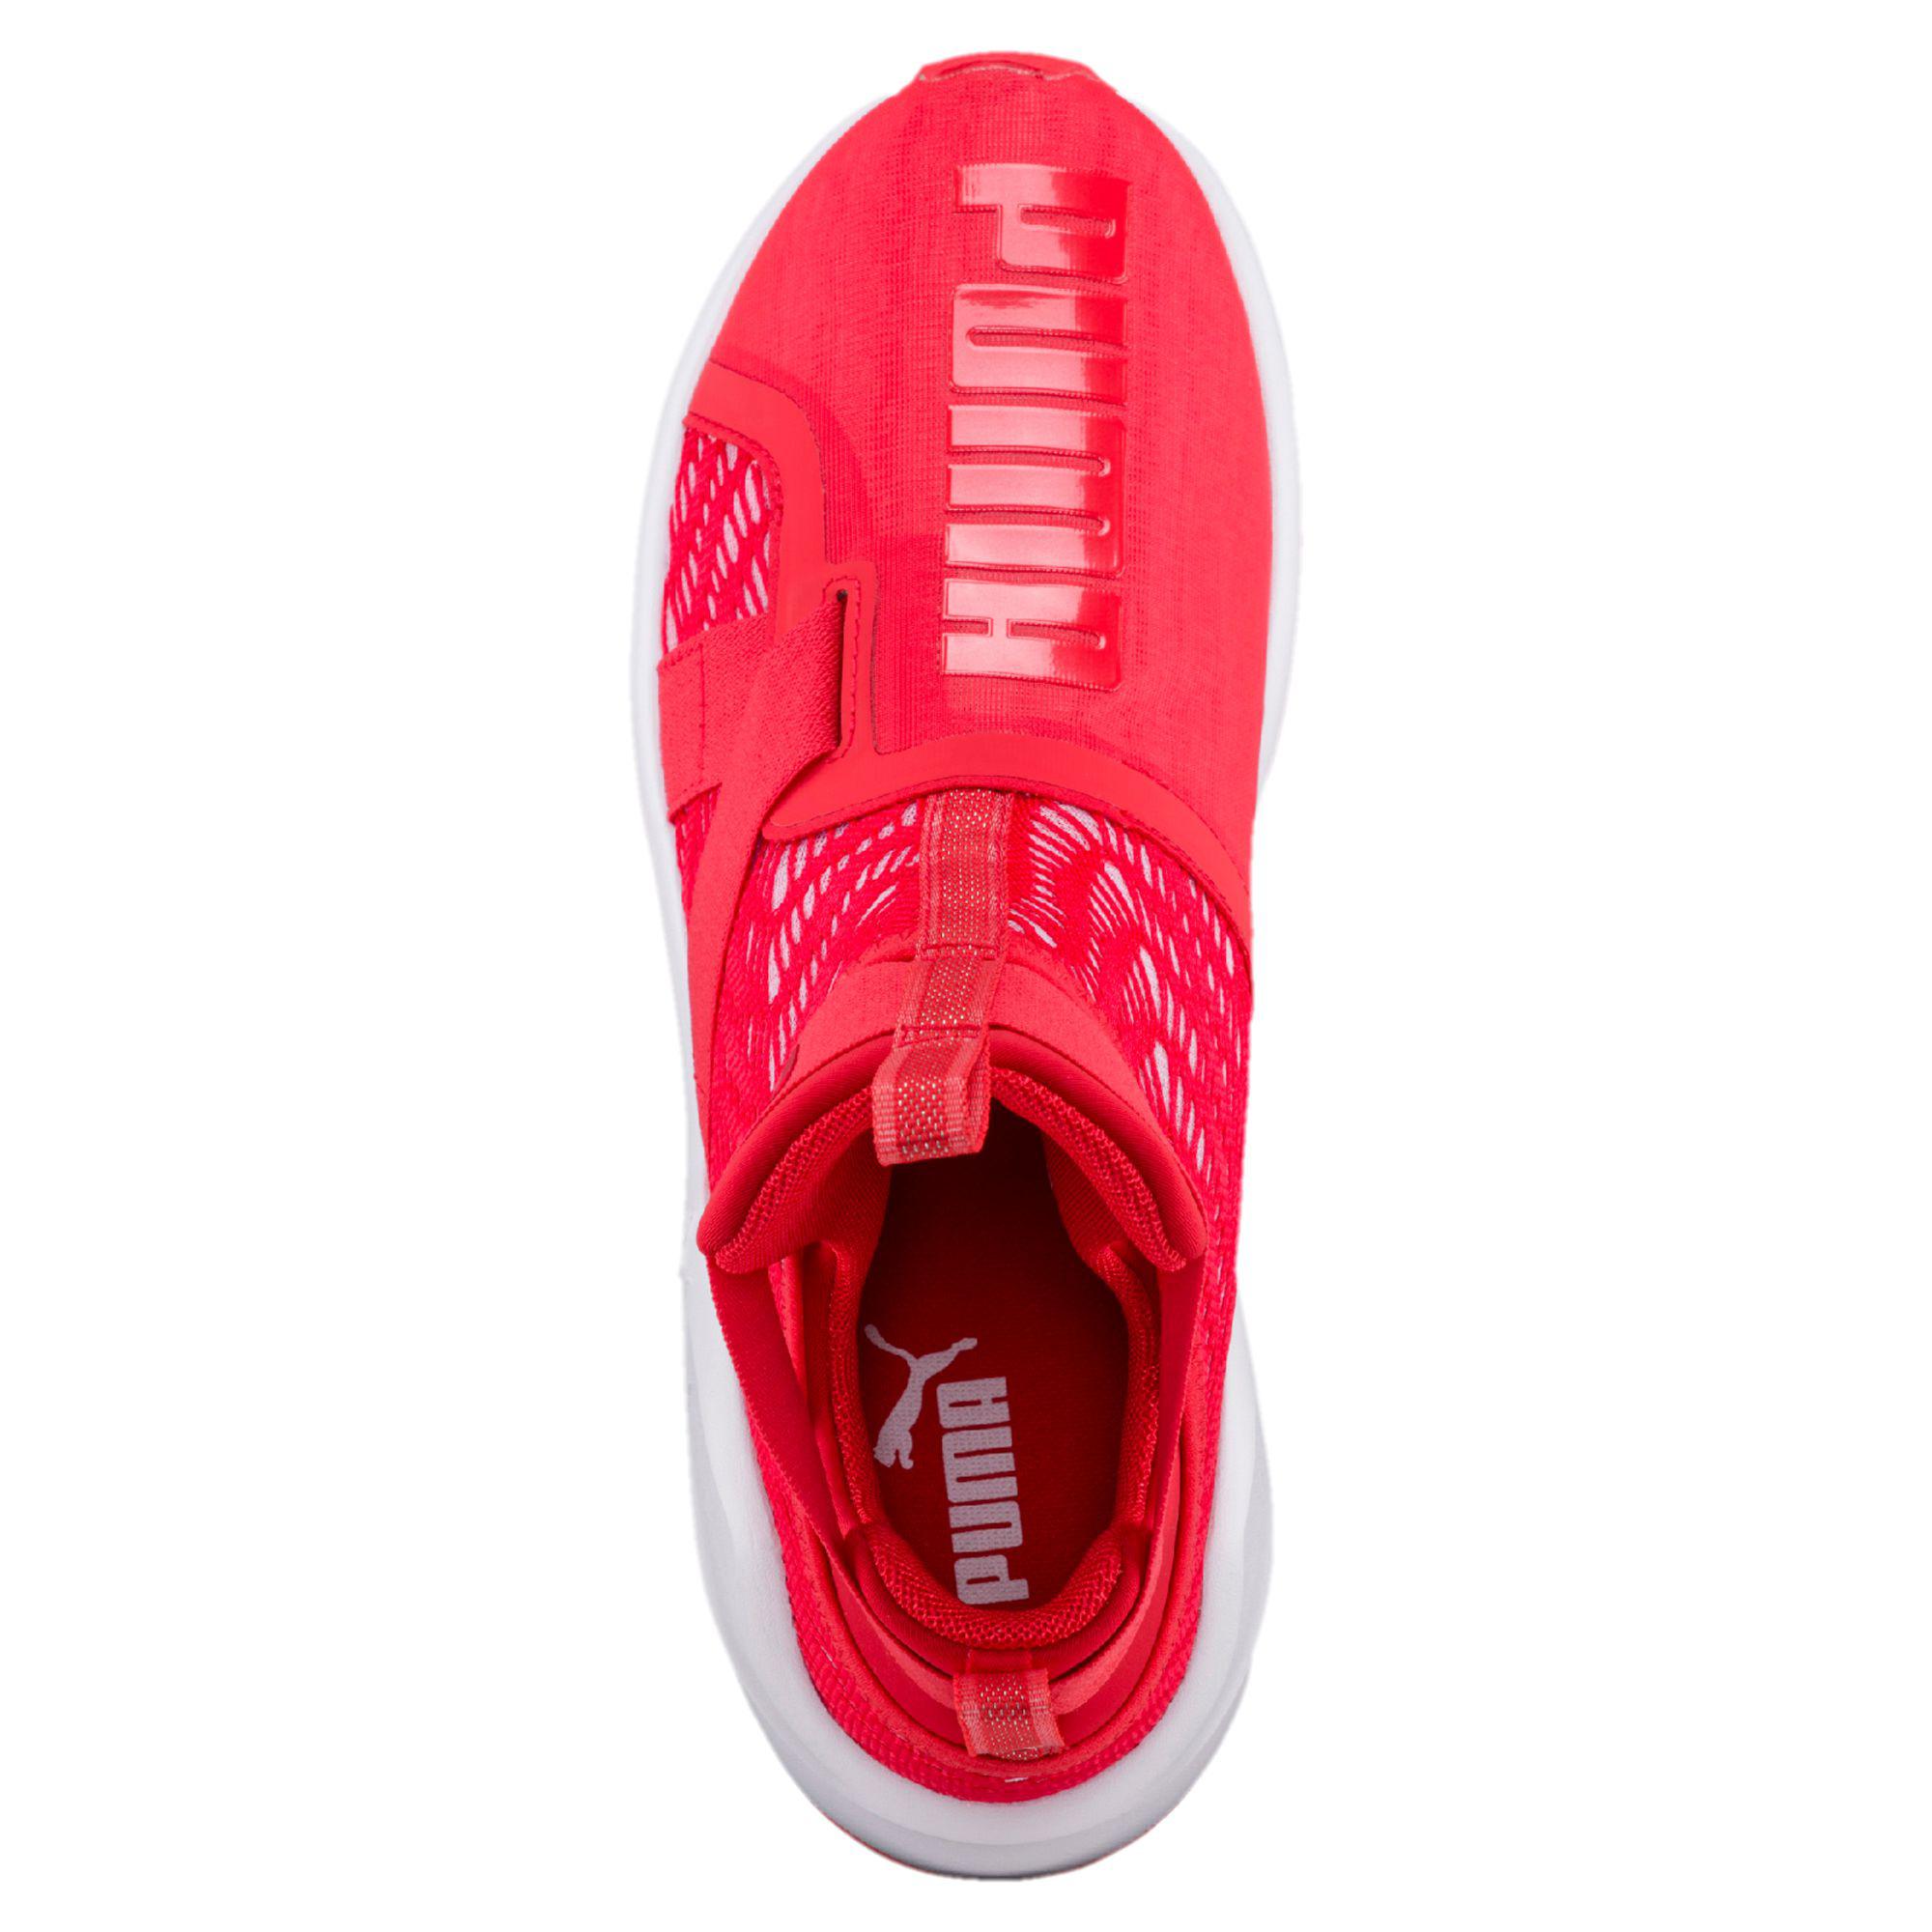 PUMA Rubber Fierce Strap Swirl Women's Training Shoes in Red | Lyst